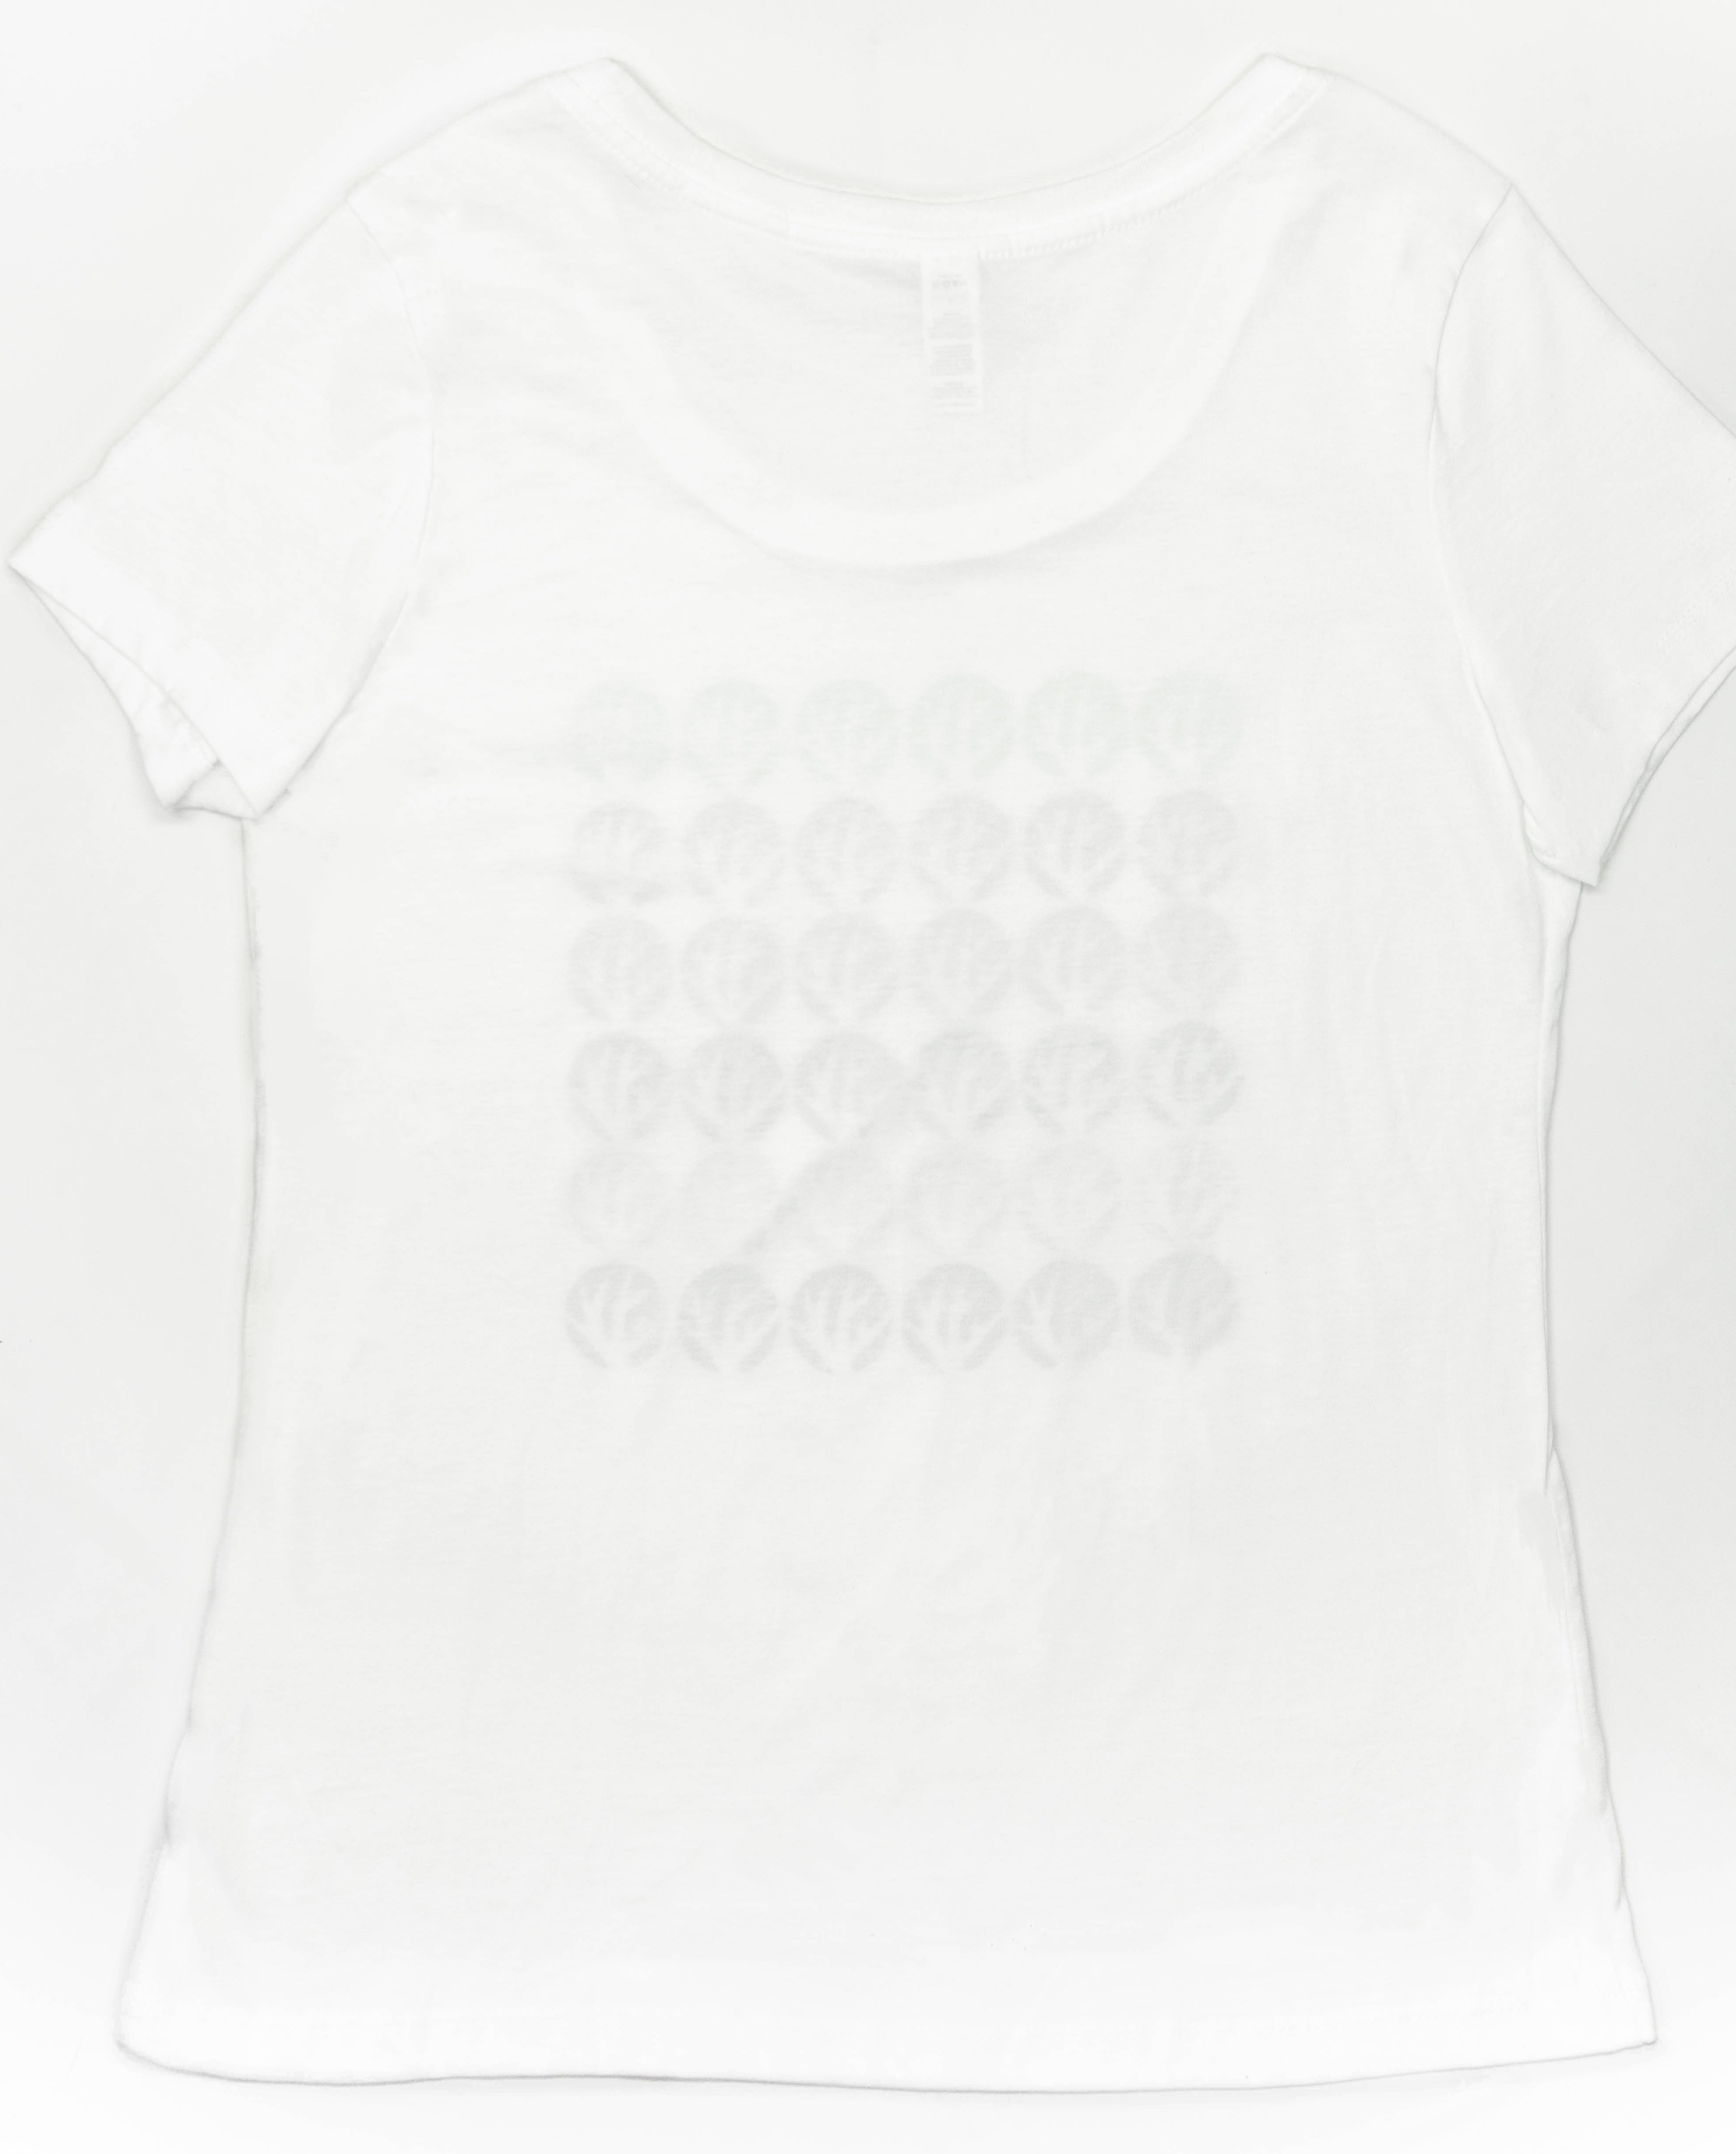 Coral-O T-Shirt